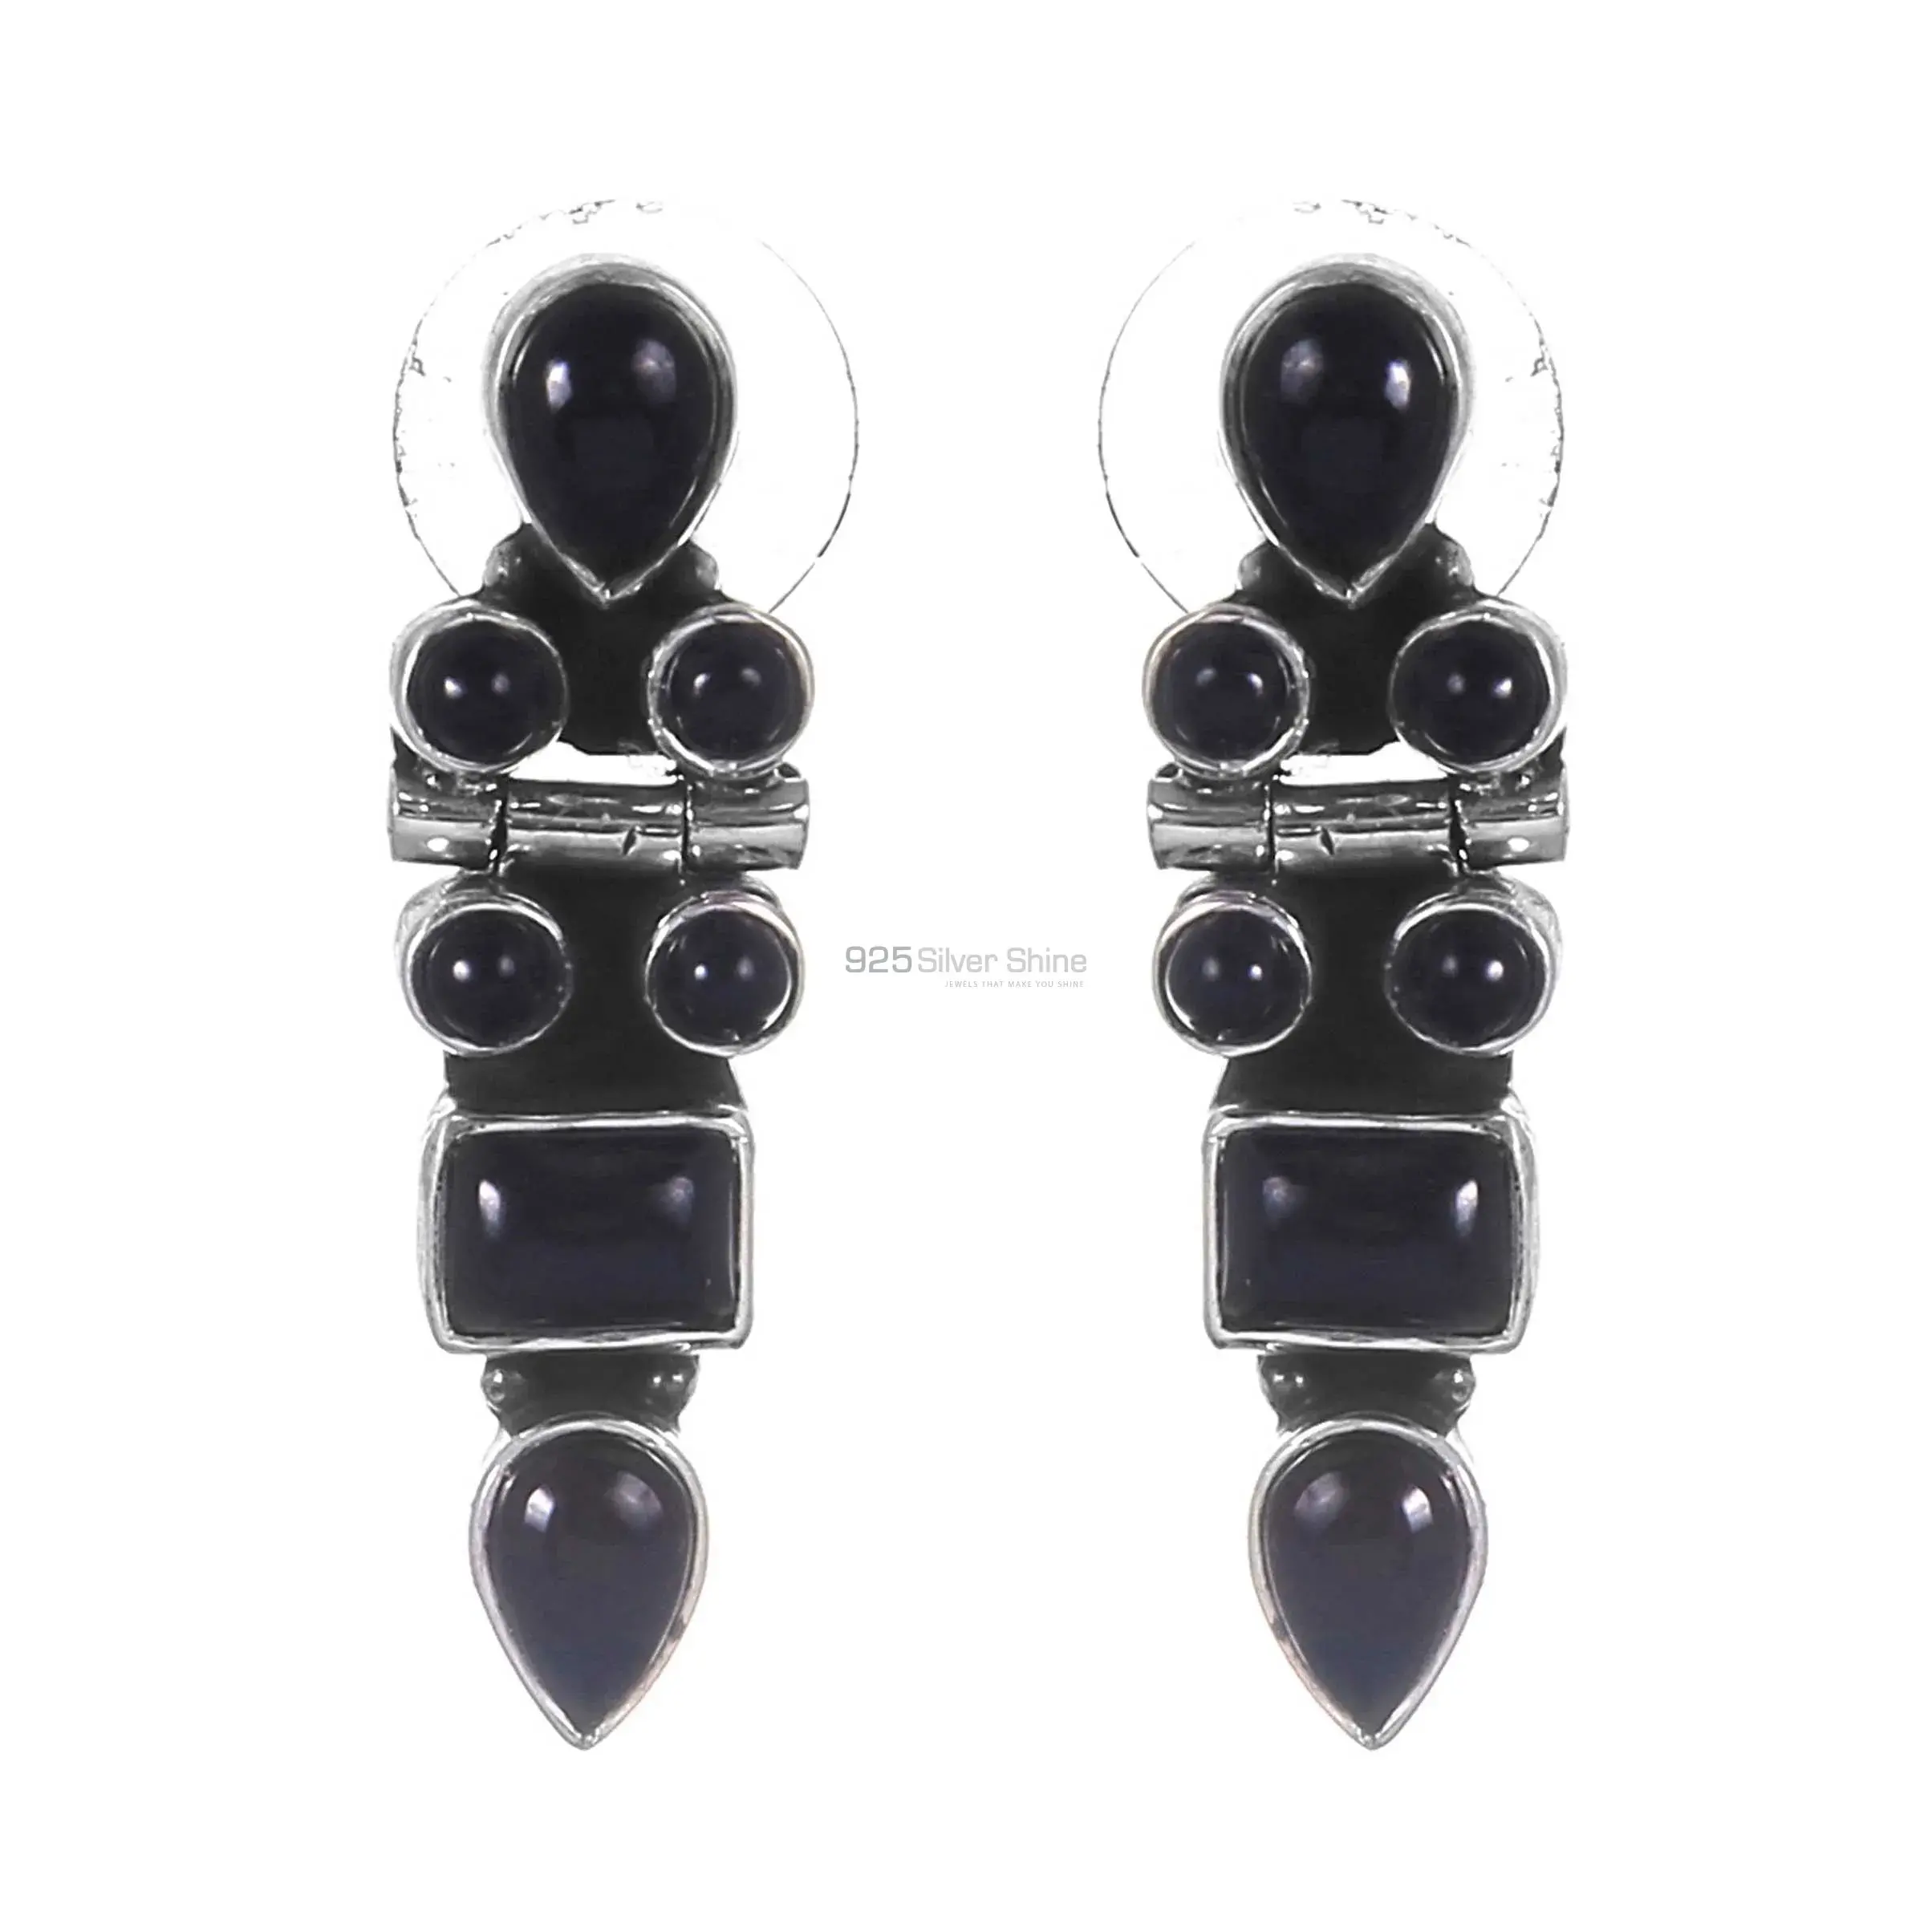 Black onyx Gemstone Earrings Wholesaler In 925 Sterling Silver Jewelry 925SE255